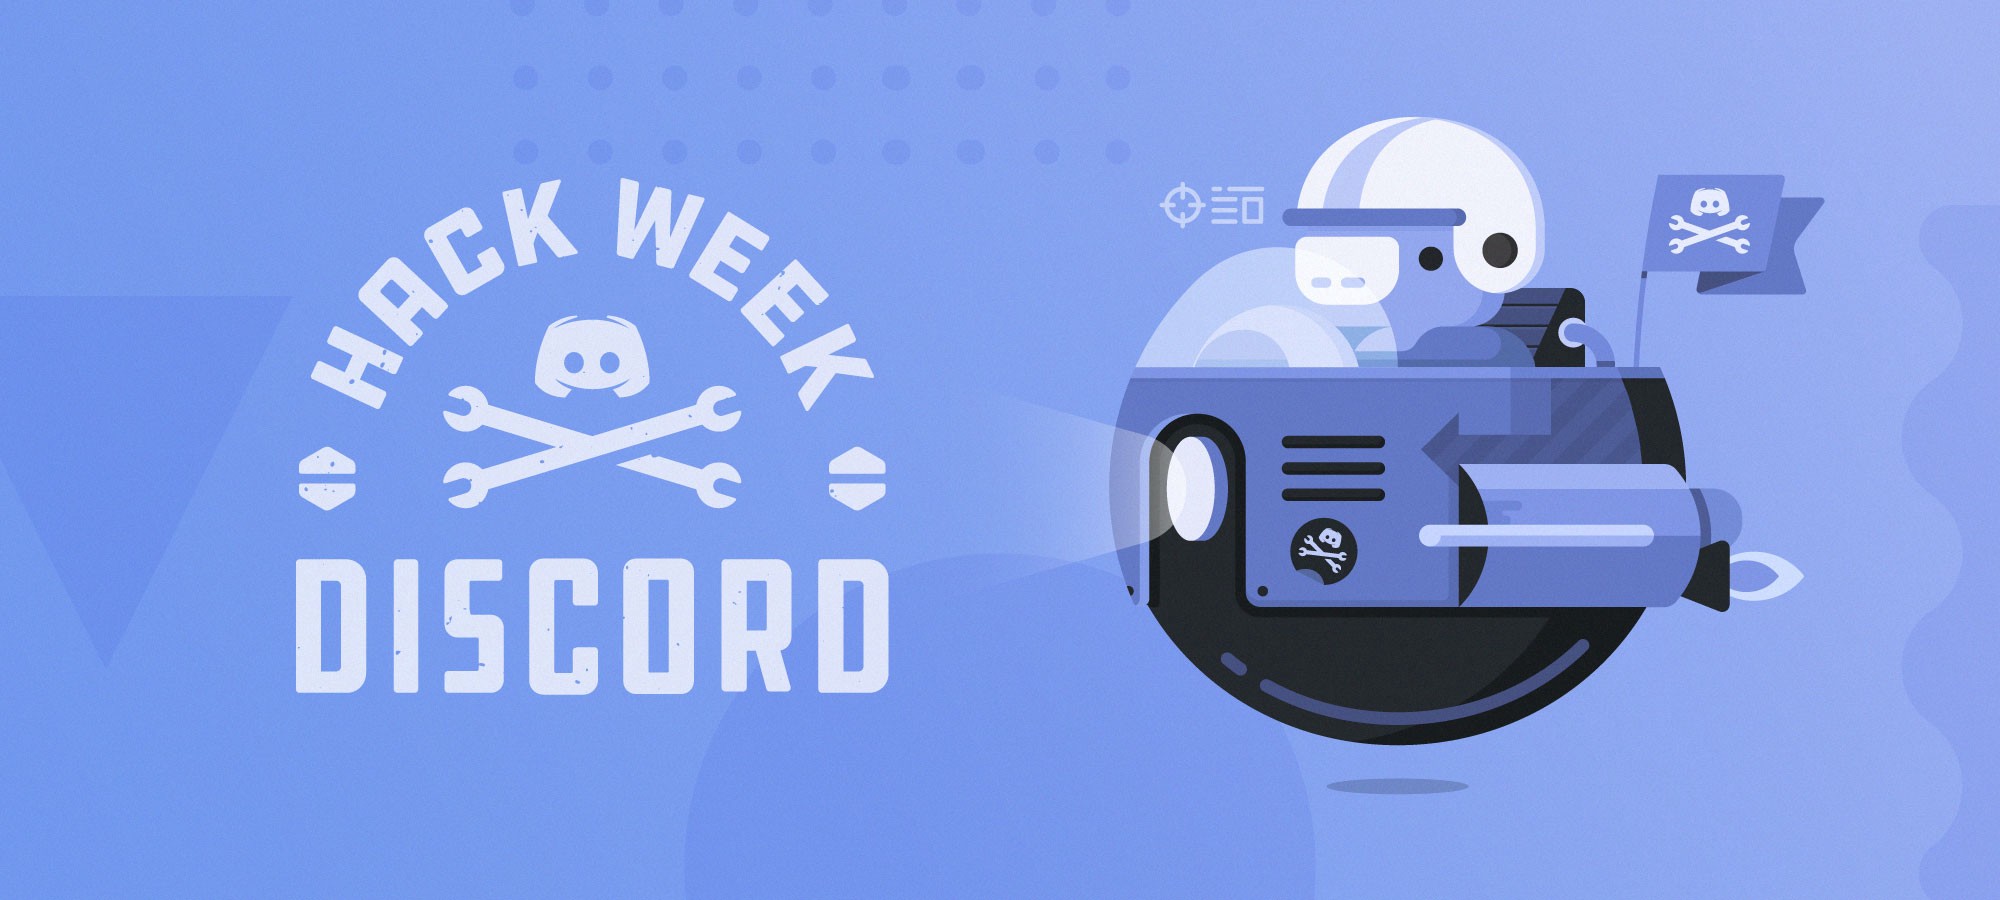 Discord Hack Week 2019